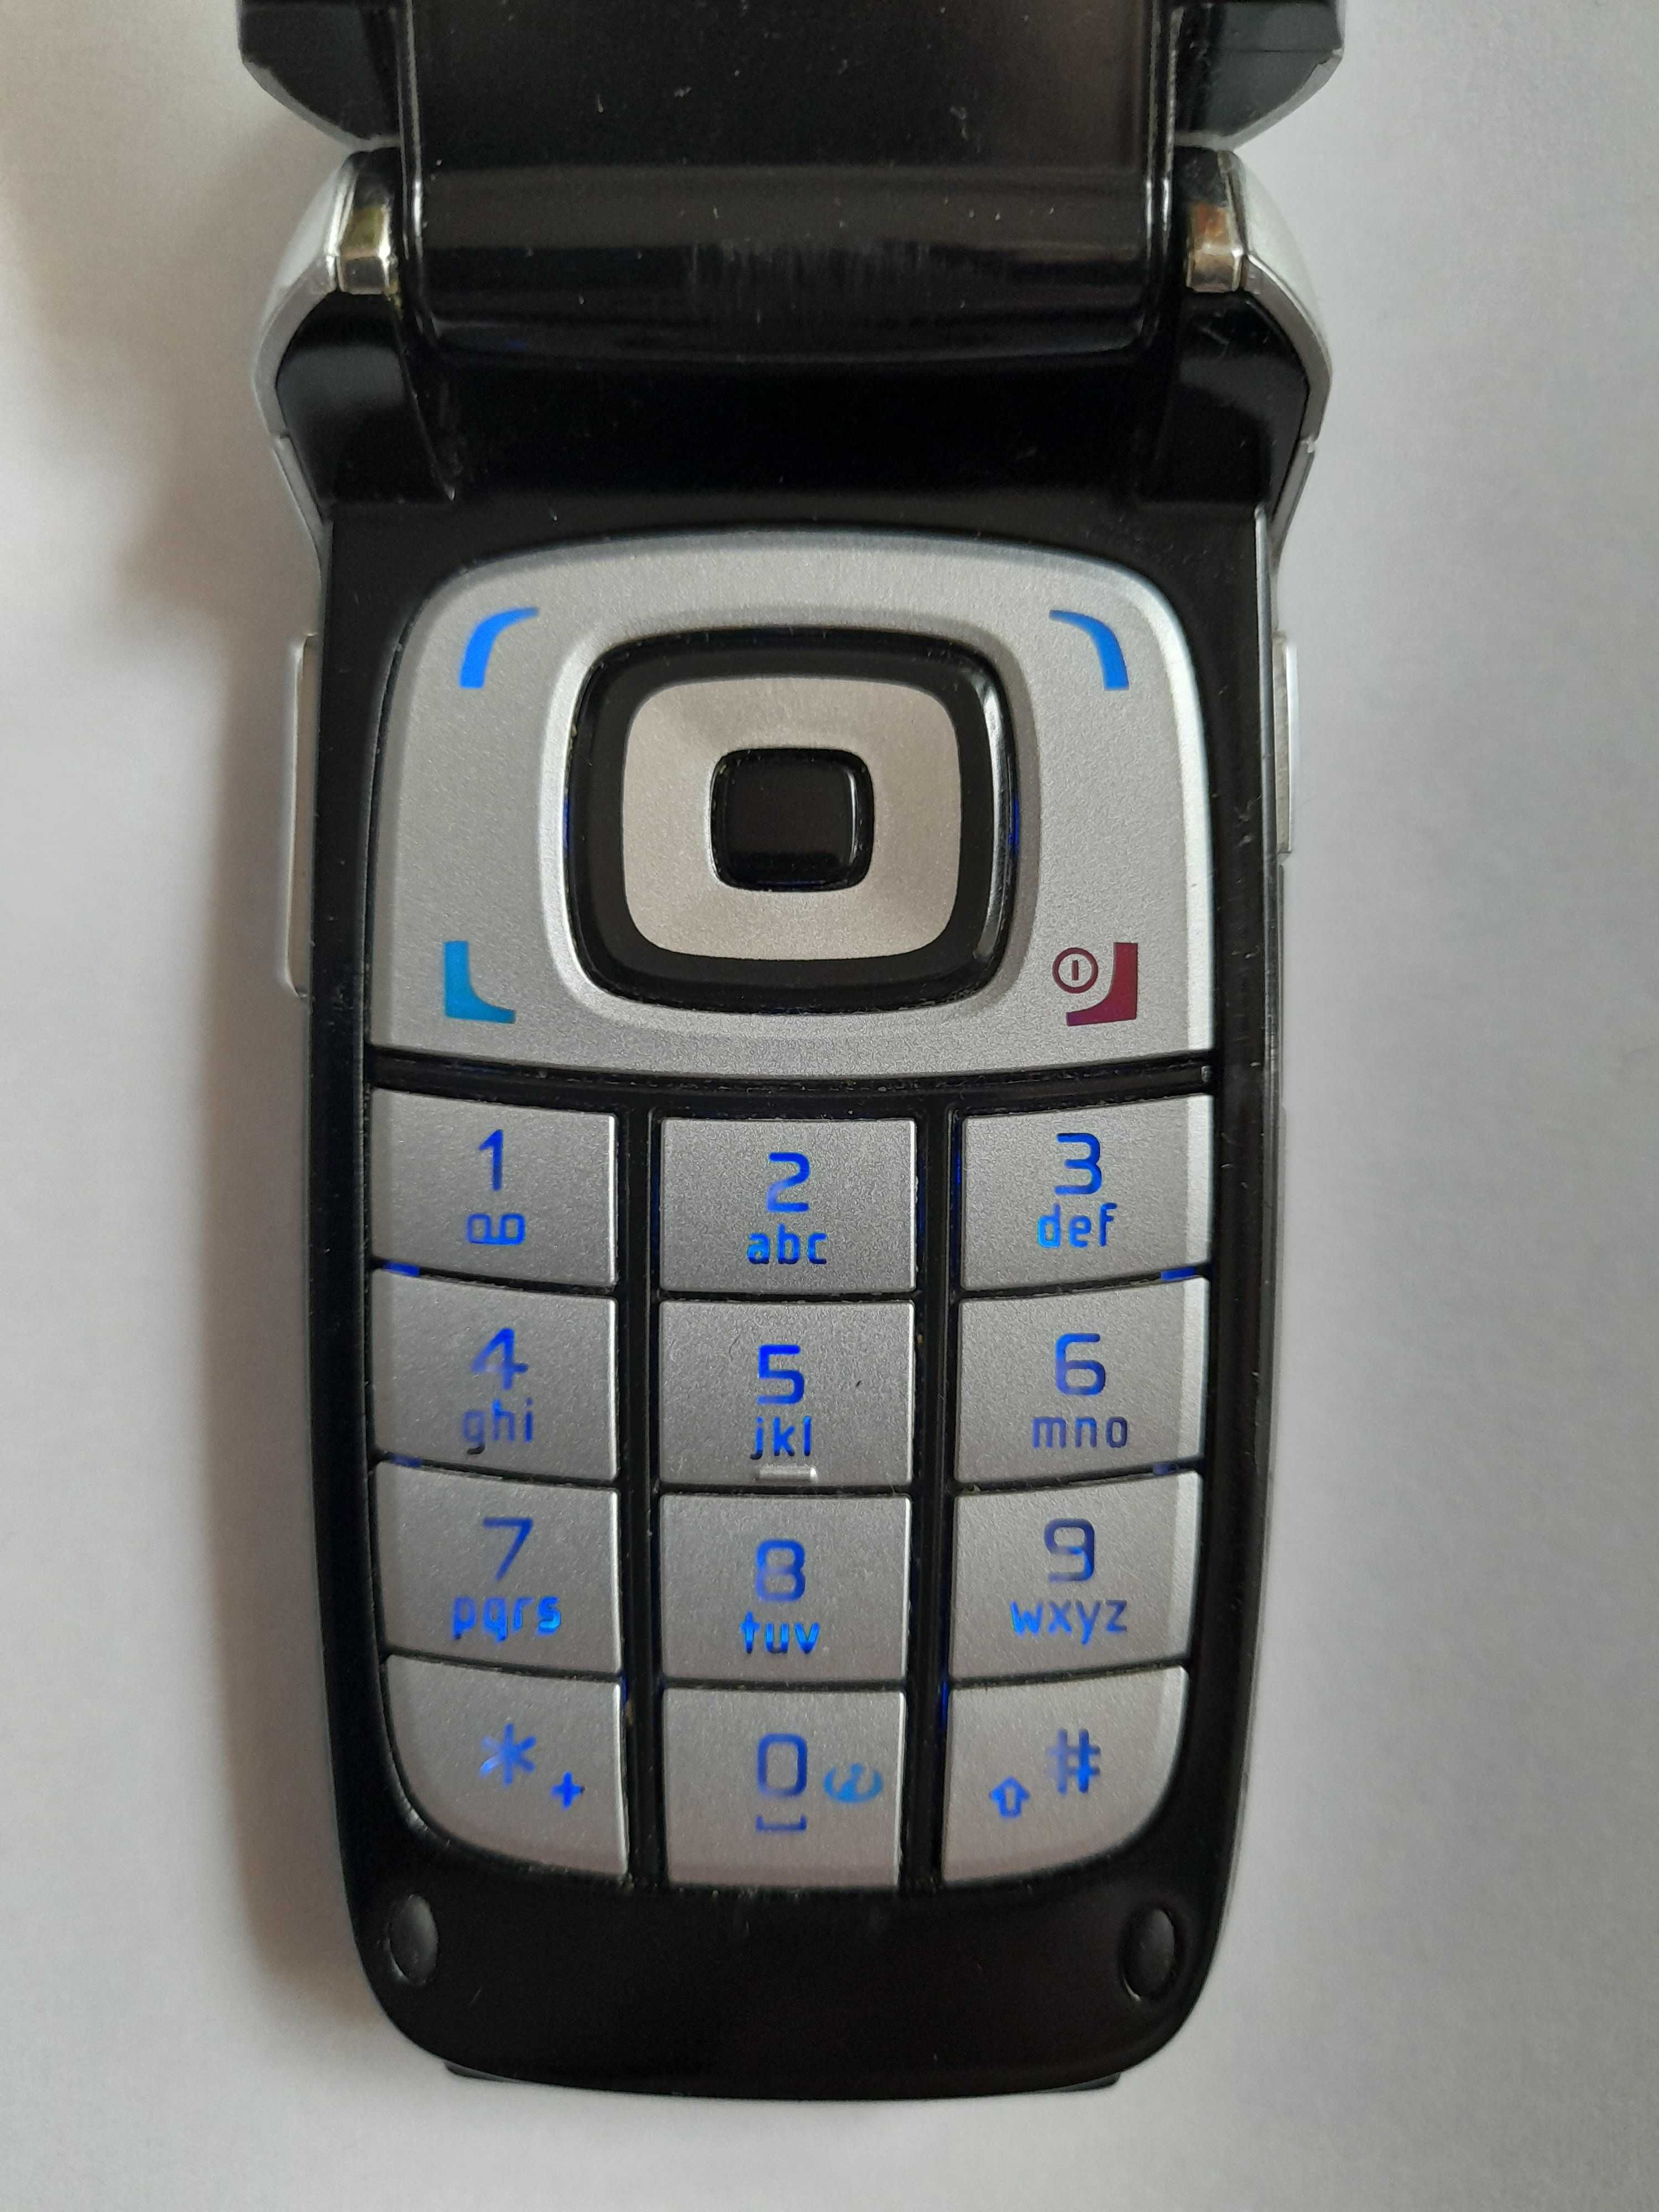 Nokia 6101 Sims 2 Edition Rm-76 - Prawie nowa-kpl.